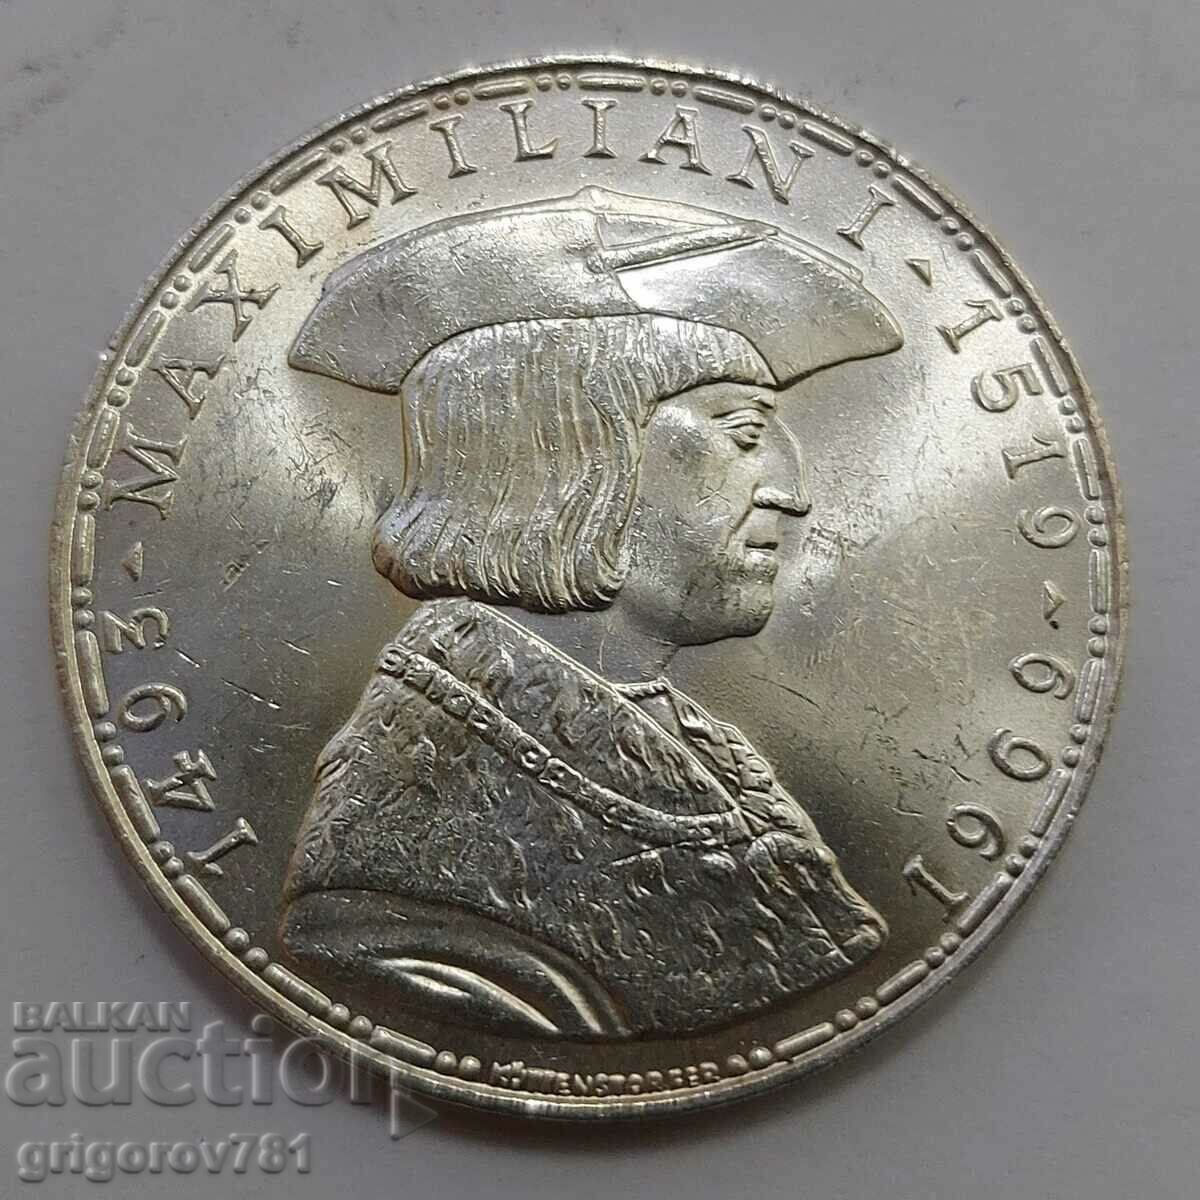 Ασημένιο 50 σελίνια Αυστρία 1969 - ασημένιο νόμισμα